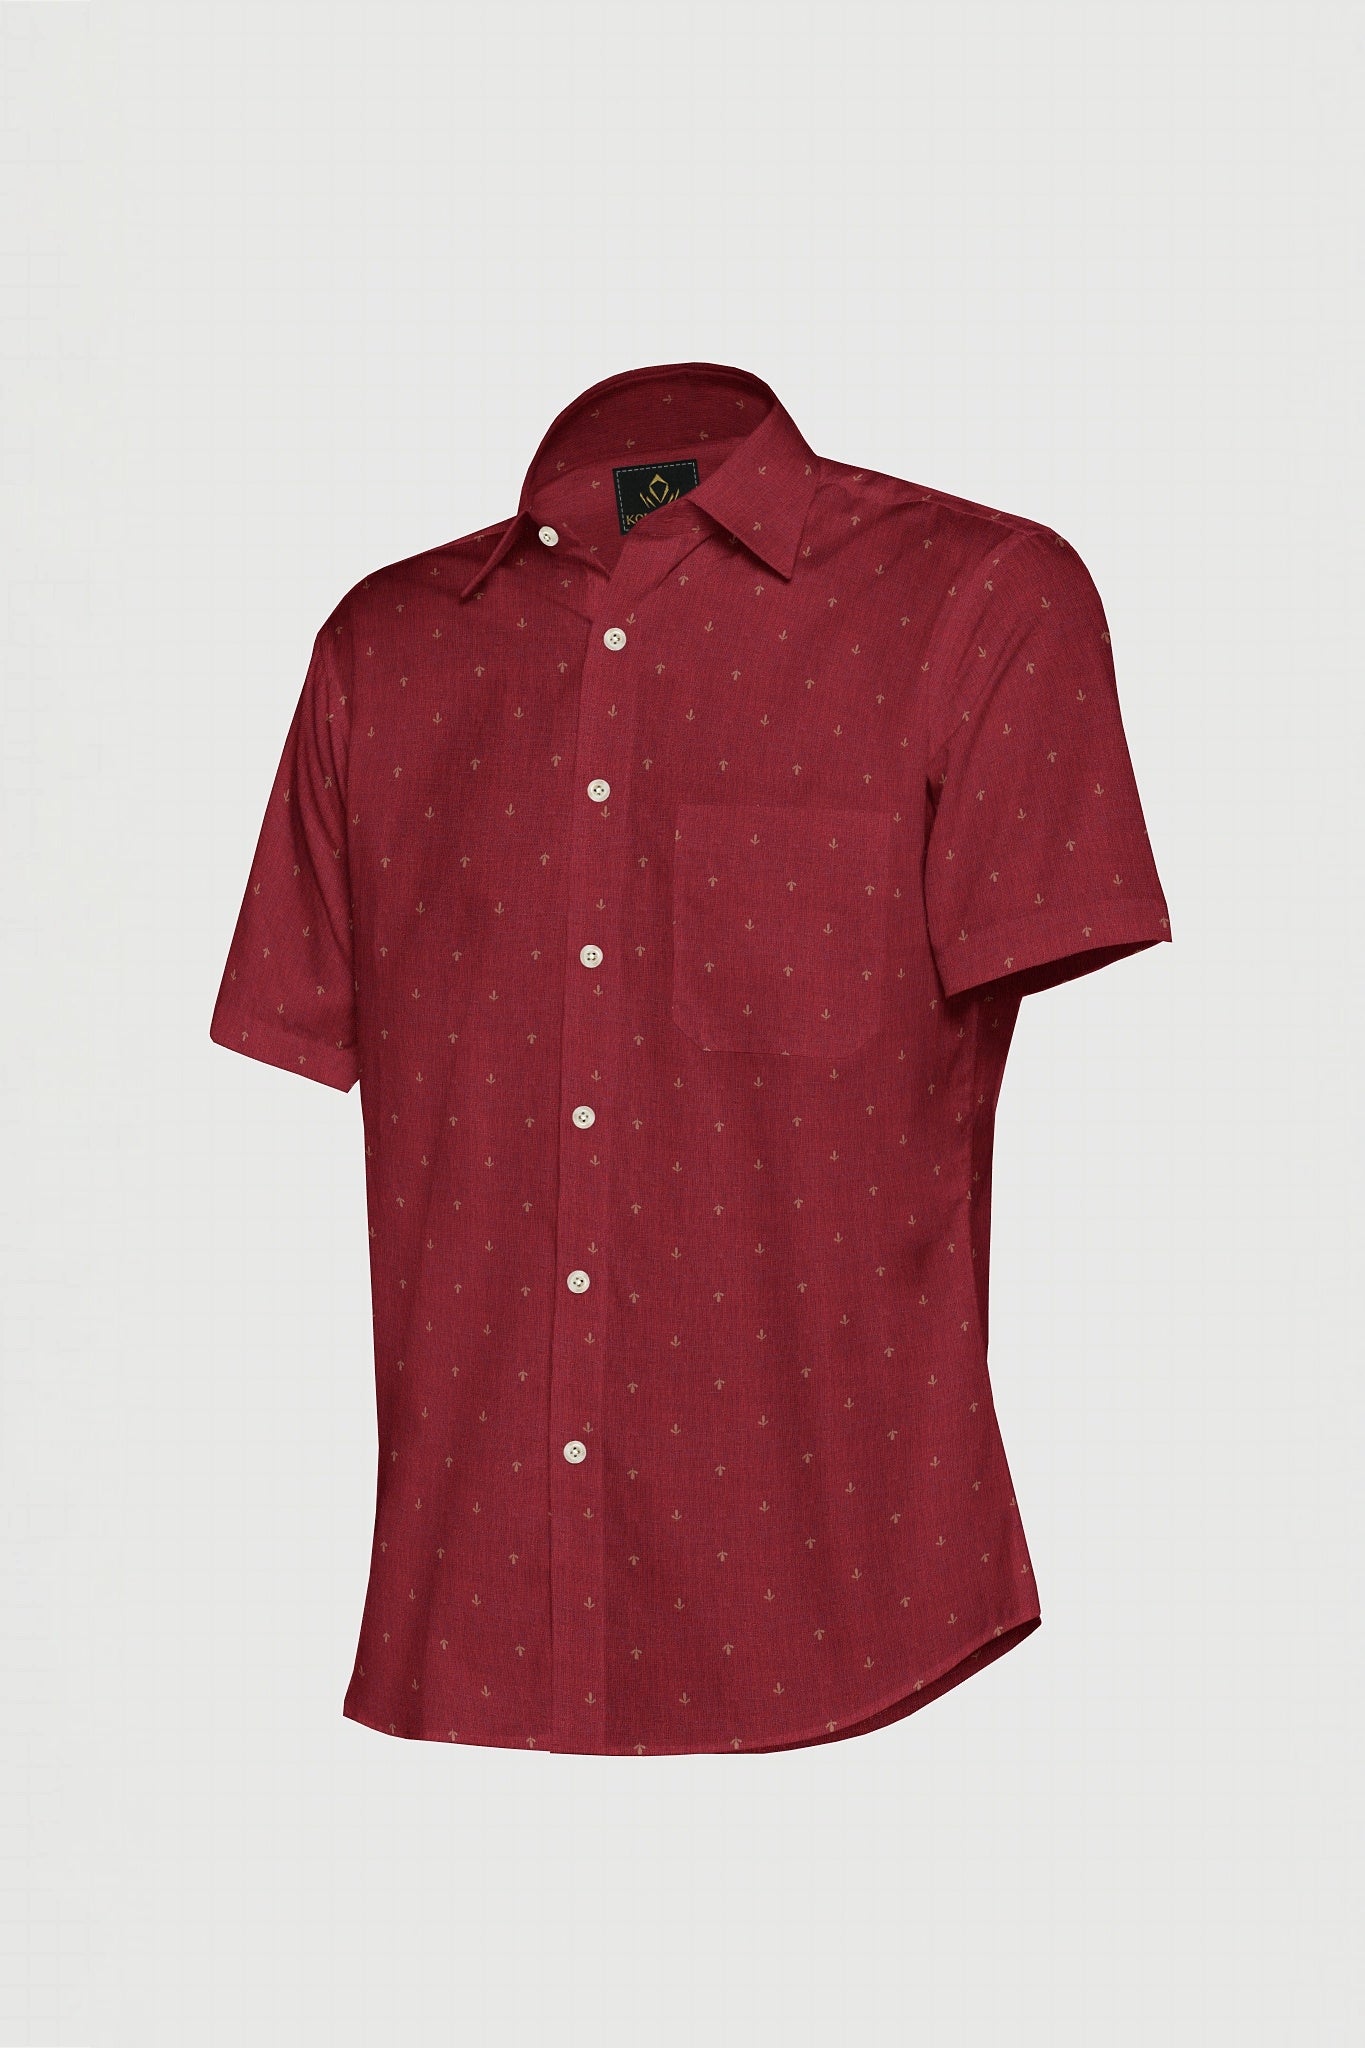 Carmine Red Flower Printed Luxurious Linen Shirt